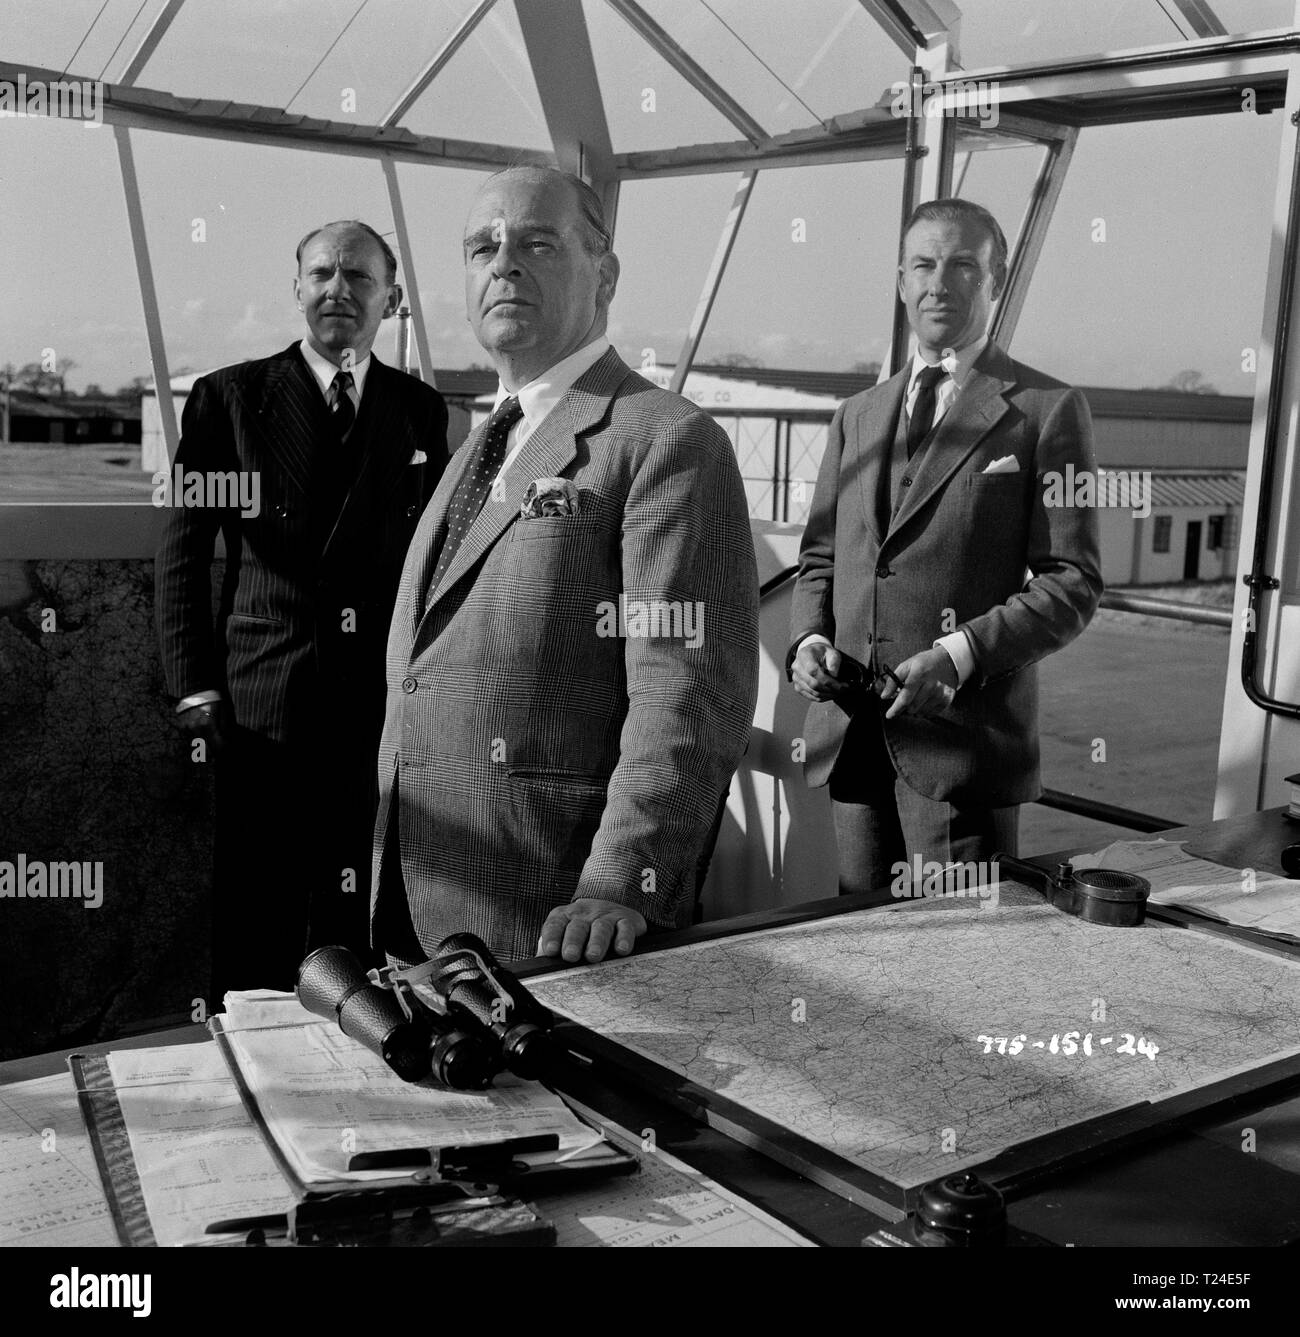 L'homme dans le ciel (1957) Russell Waters, Walter Fitzgerald, Ernest Clark, Date : 1957 Banque D'Images